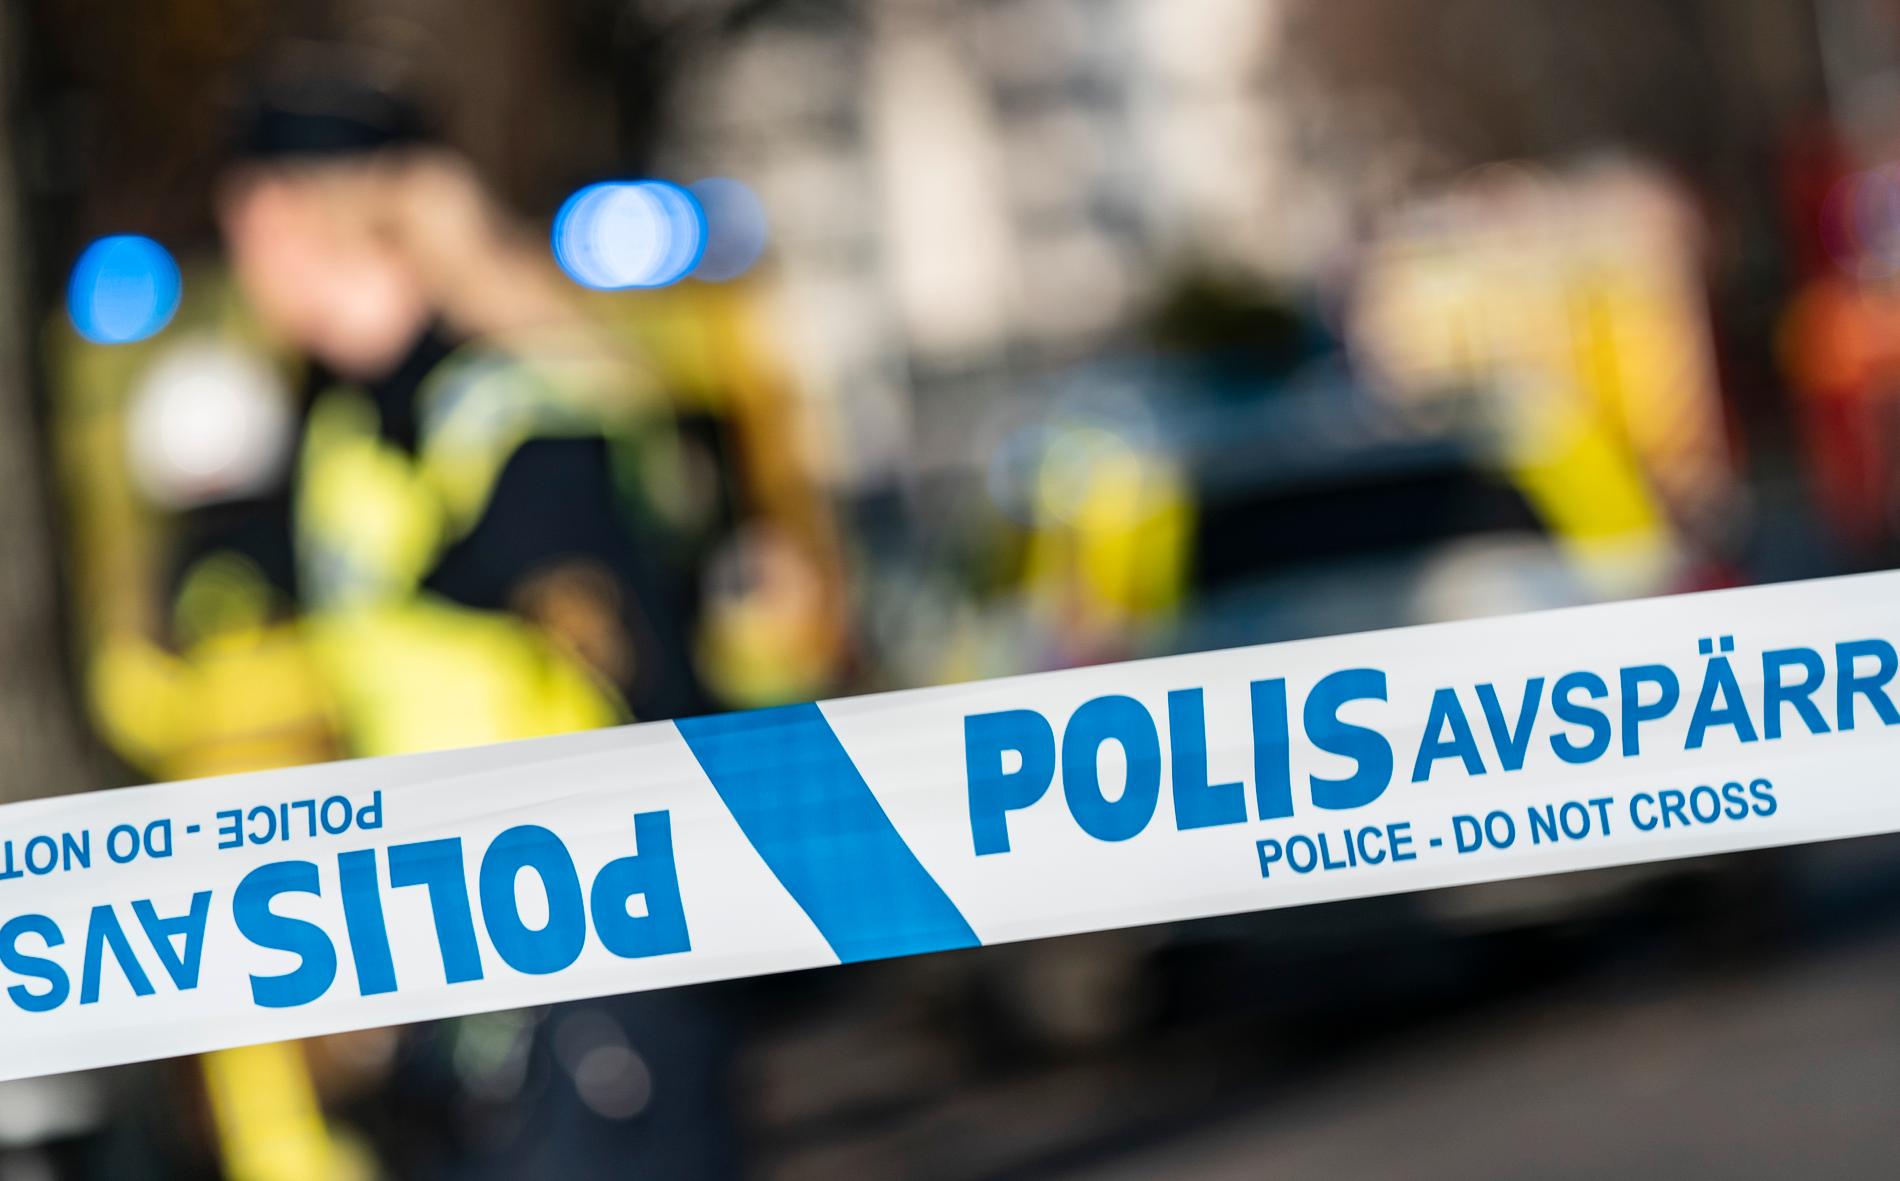 Två personer åtalas efter ett uppmärksammat mordförsök i Borås. Arkivbild.